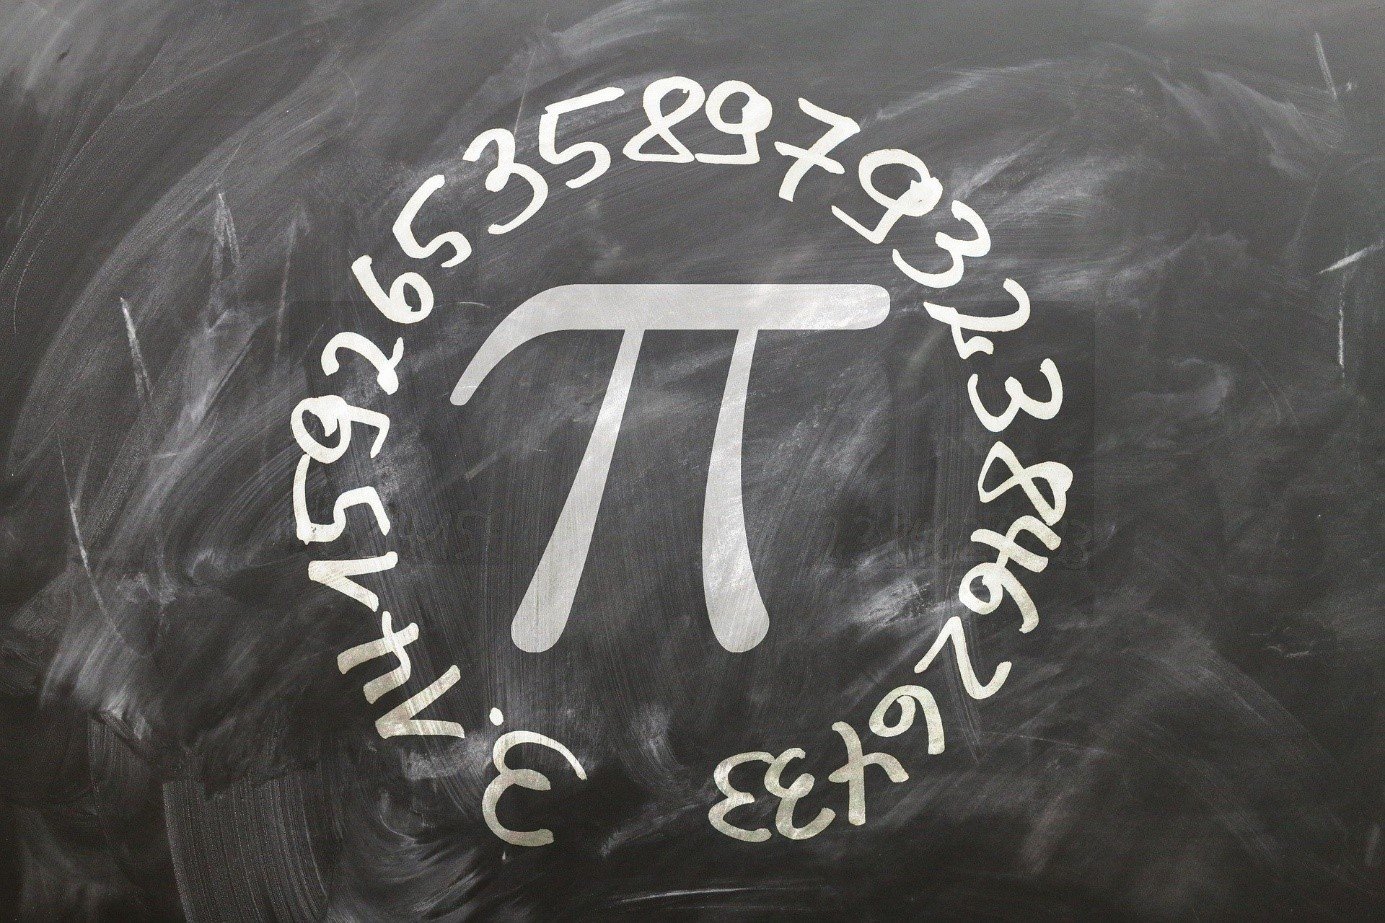 tablica szkolna z narysowanym kredą symbolem liczby pi